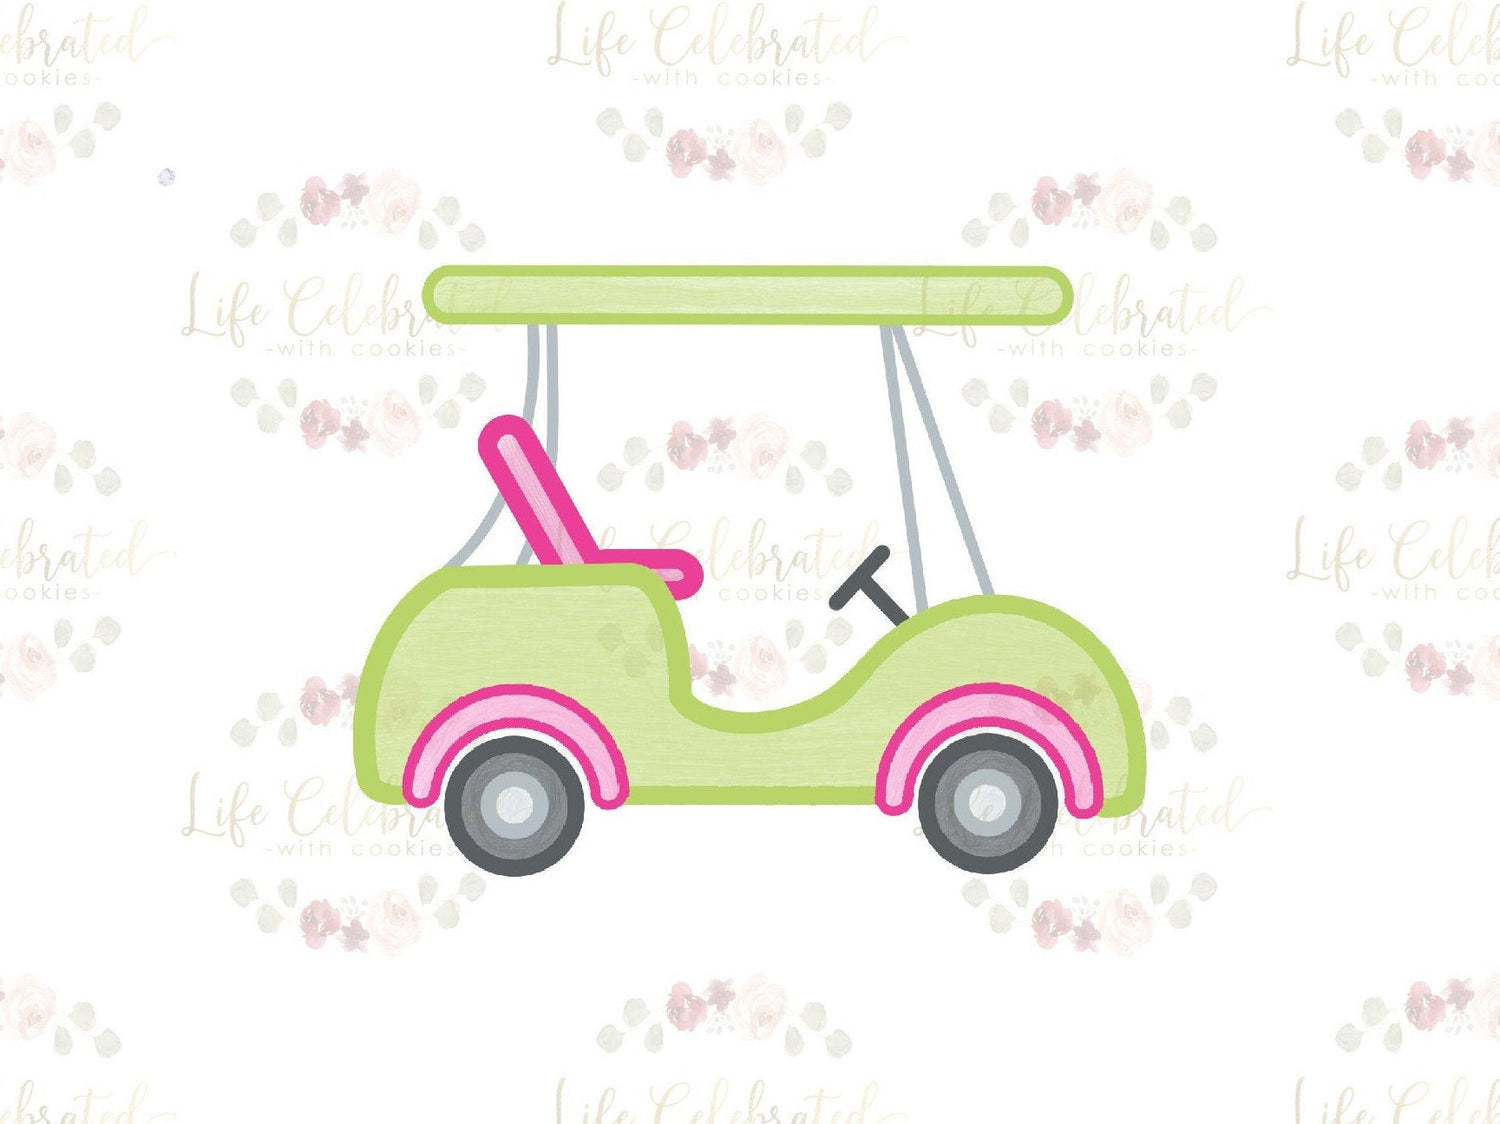 Golf Cart Cookie Cutter